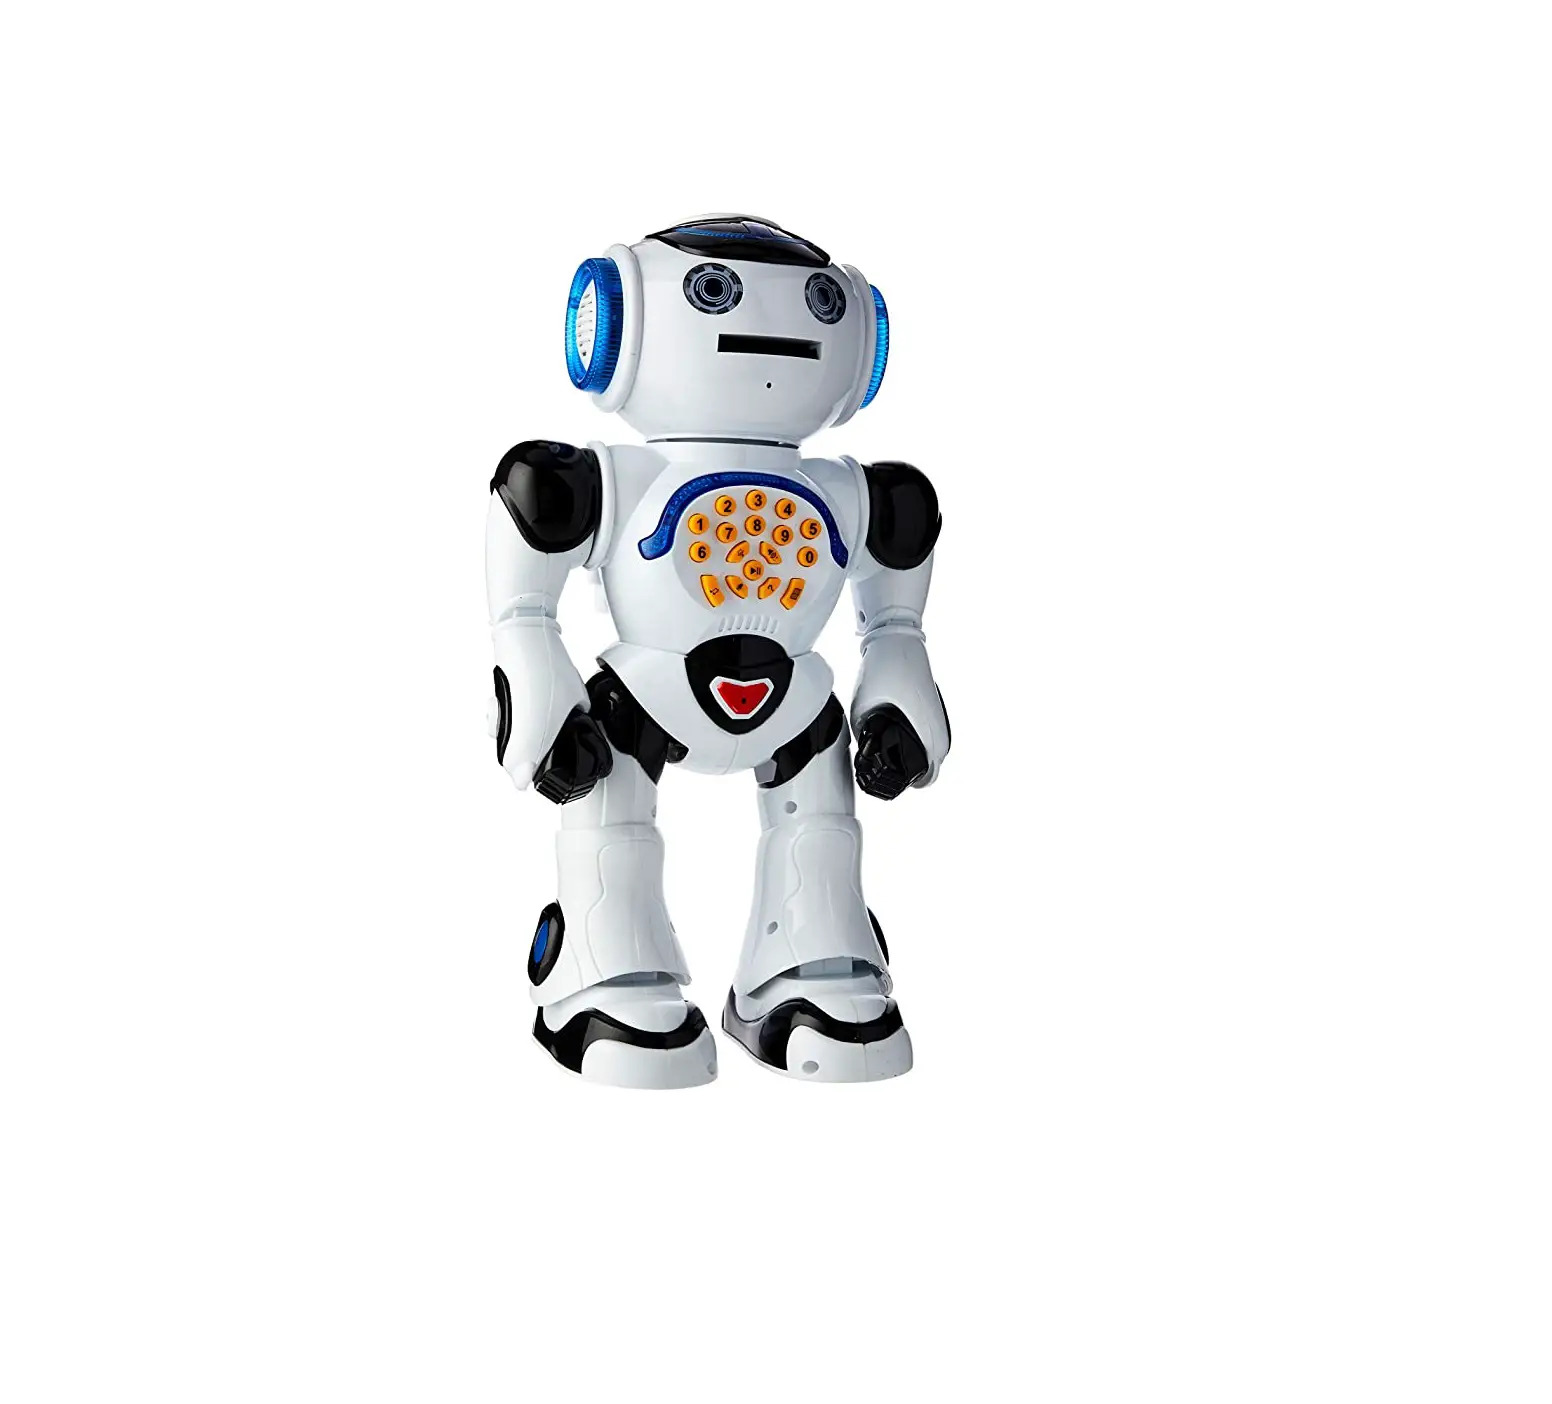 Powerman Edutainment Robot